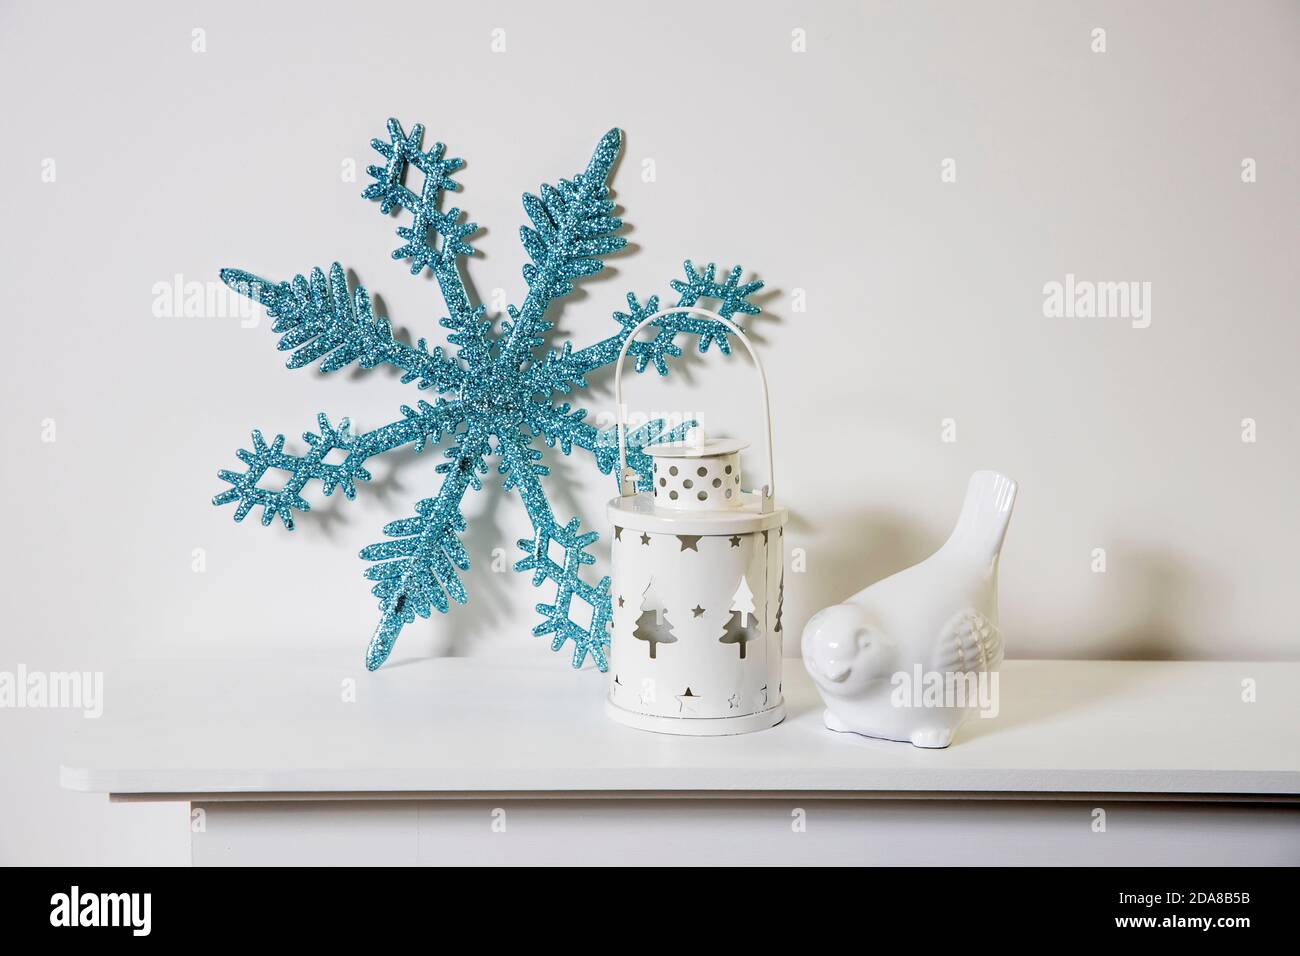 Décoration de Noël : flocon de neige bleu à paillettes artificielles, porte-bougie et porte-bougie en porcelaine blanc, figurine, bullfinch oiseau sur la console. Copier l'espace Banque D'Images